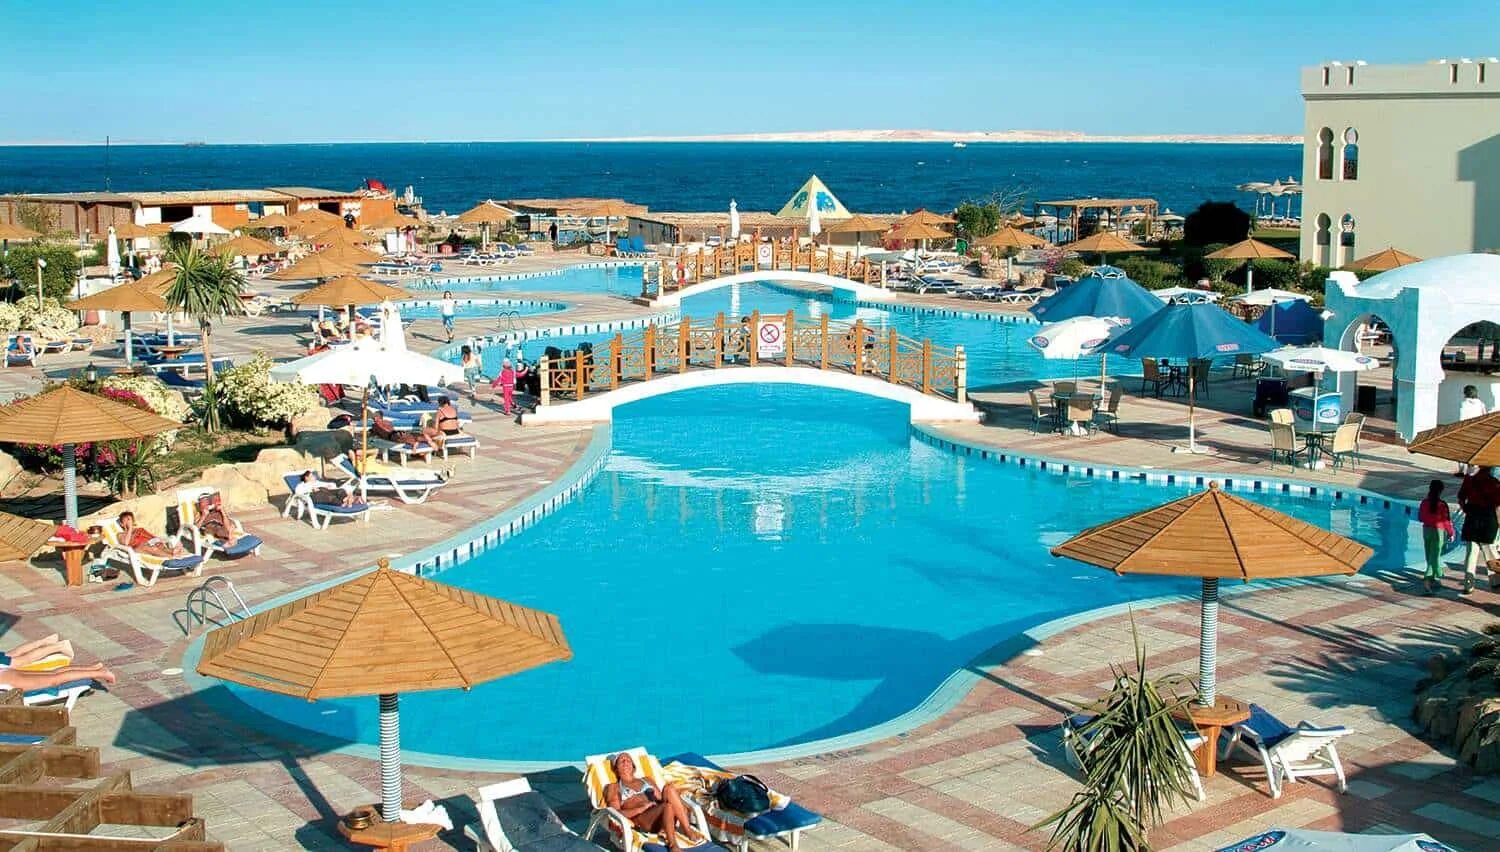 Отель в Египте Charmillion Club Resort. Отель Sea Club Египет Шарм-Эль-Шейх. Sea Club Resort 5 Шарм-Эль-Шейх. Египет отель Sea Club 5.